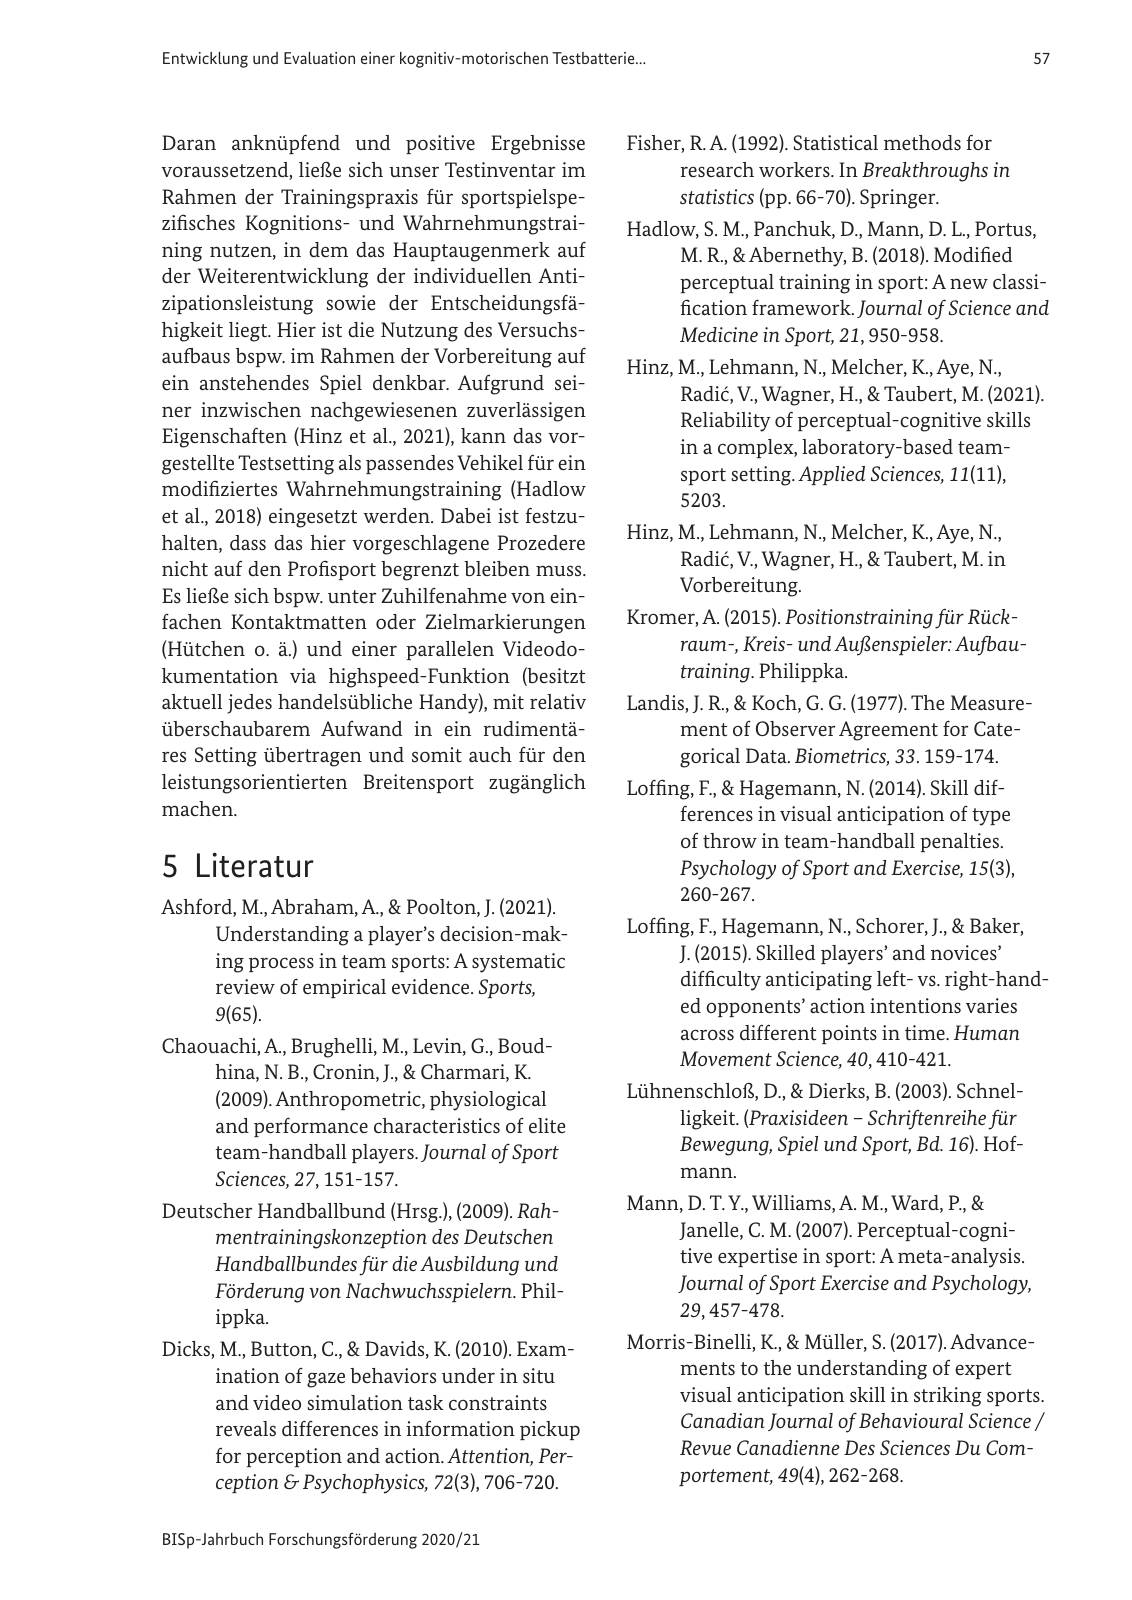 Vorschau BISp-Jahrbuch 2020/21 Seite 59